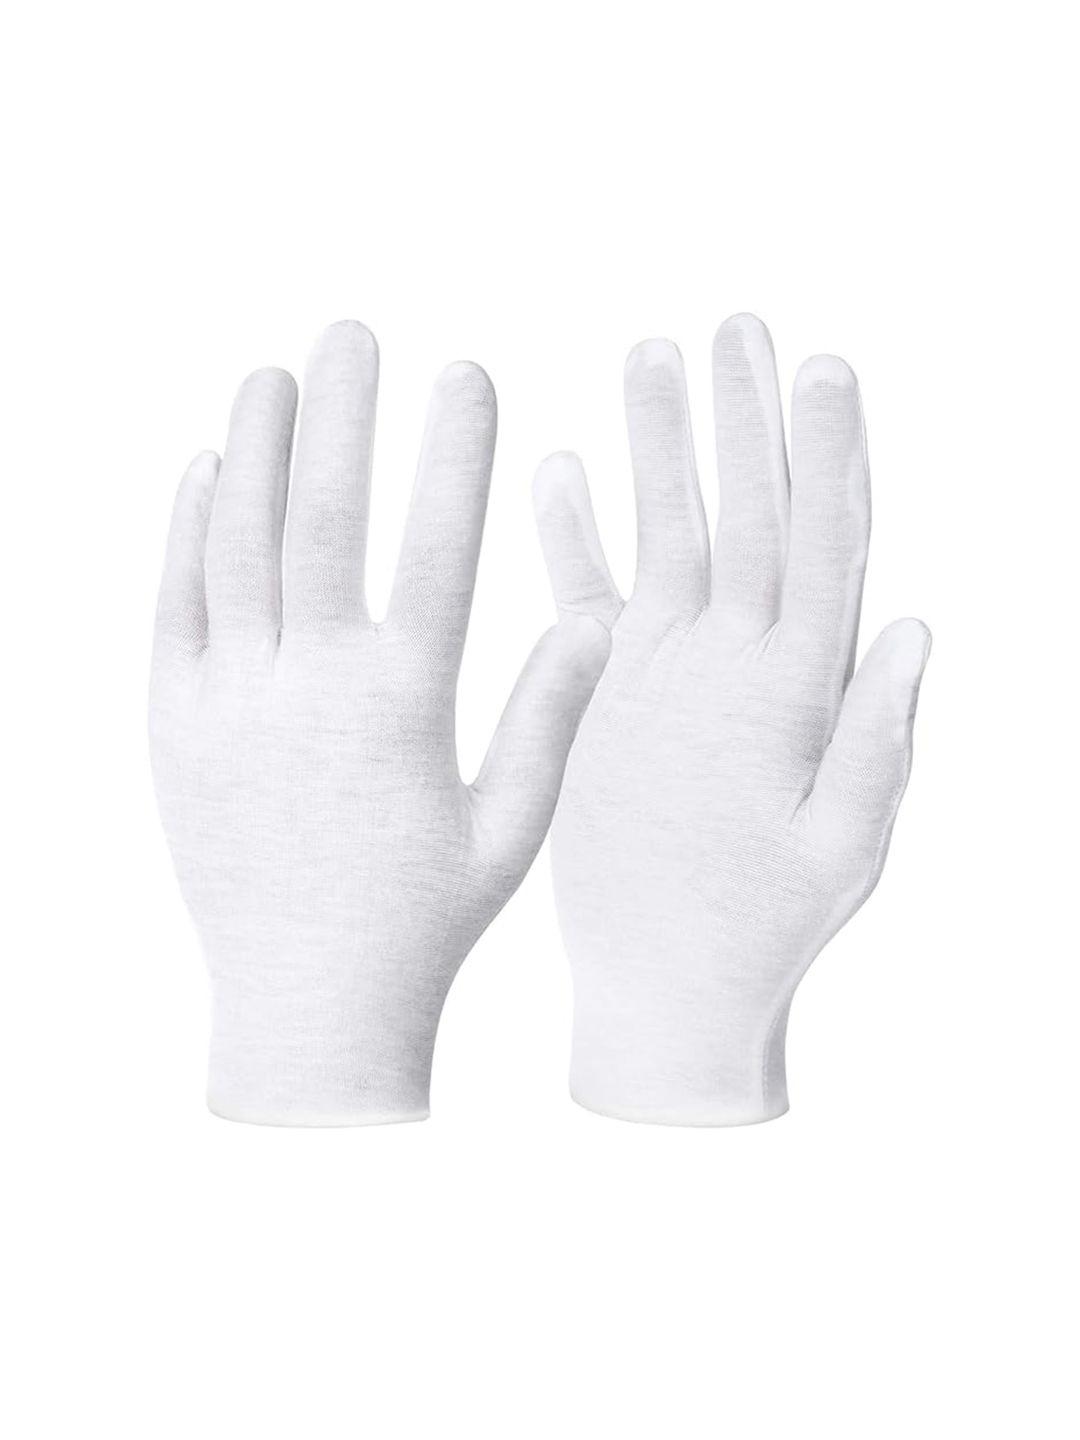 kuber industries unisex cotton gloves